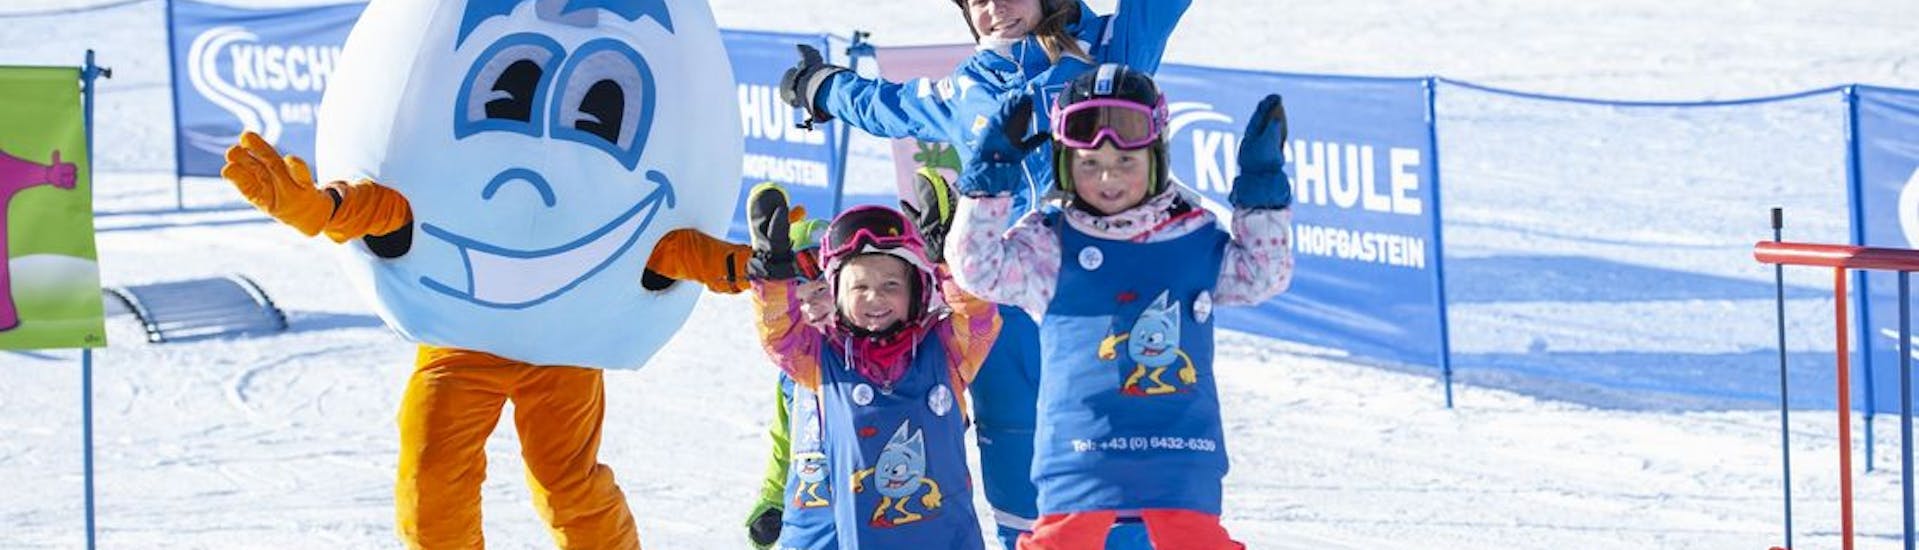 Cours de ski Enfants dès 6 ans - Avancé avec Skischule Bad Hofgastein.